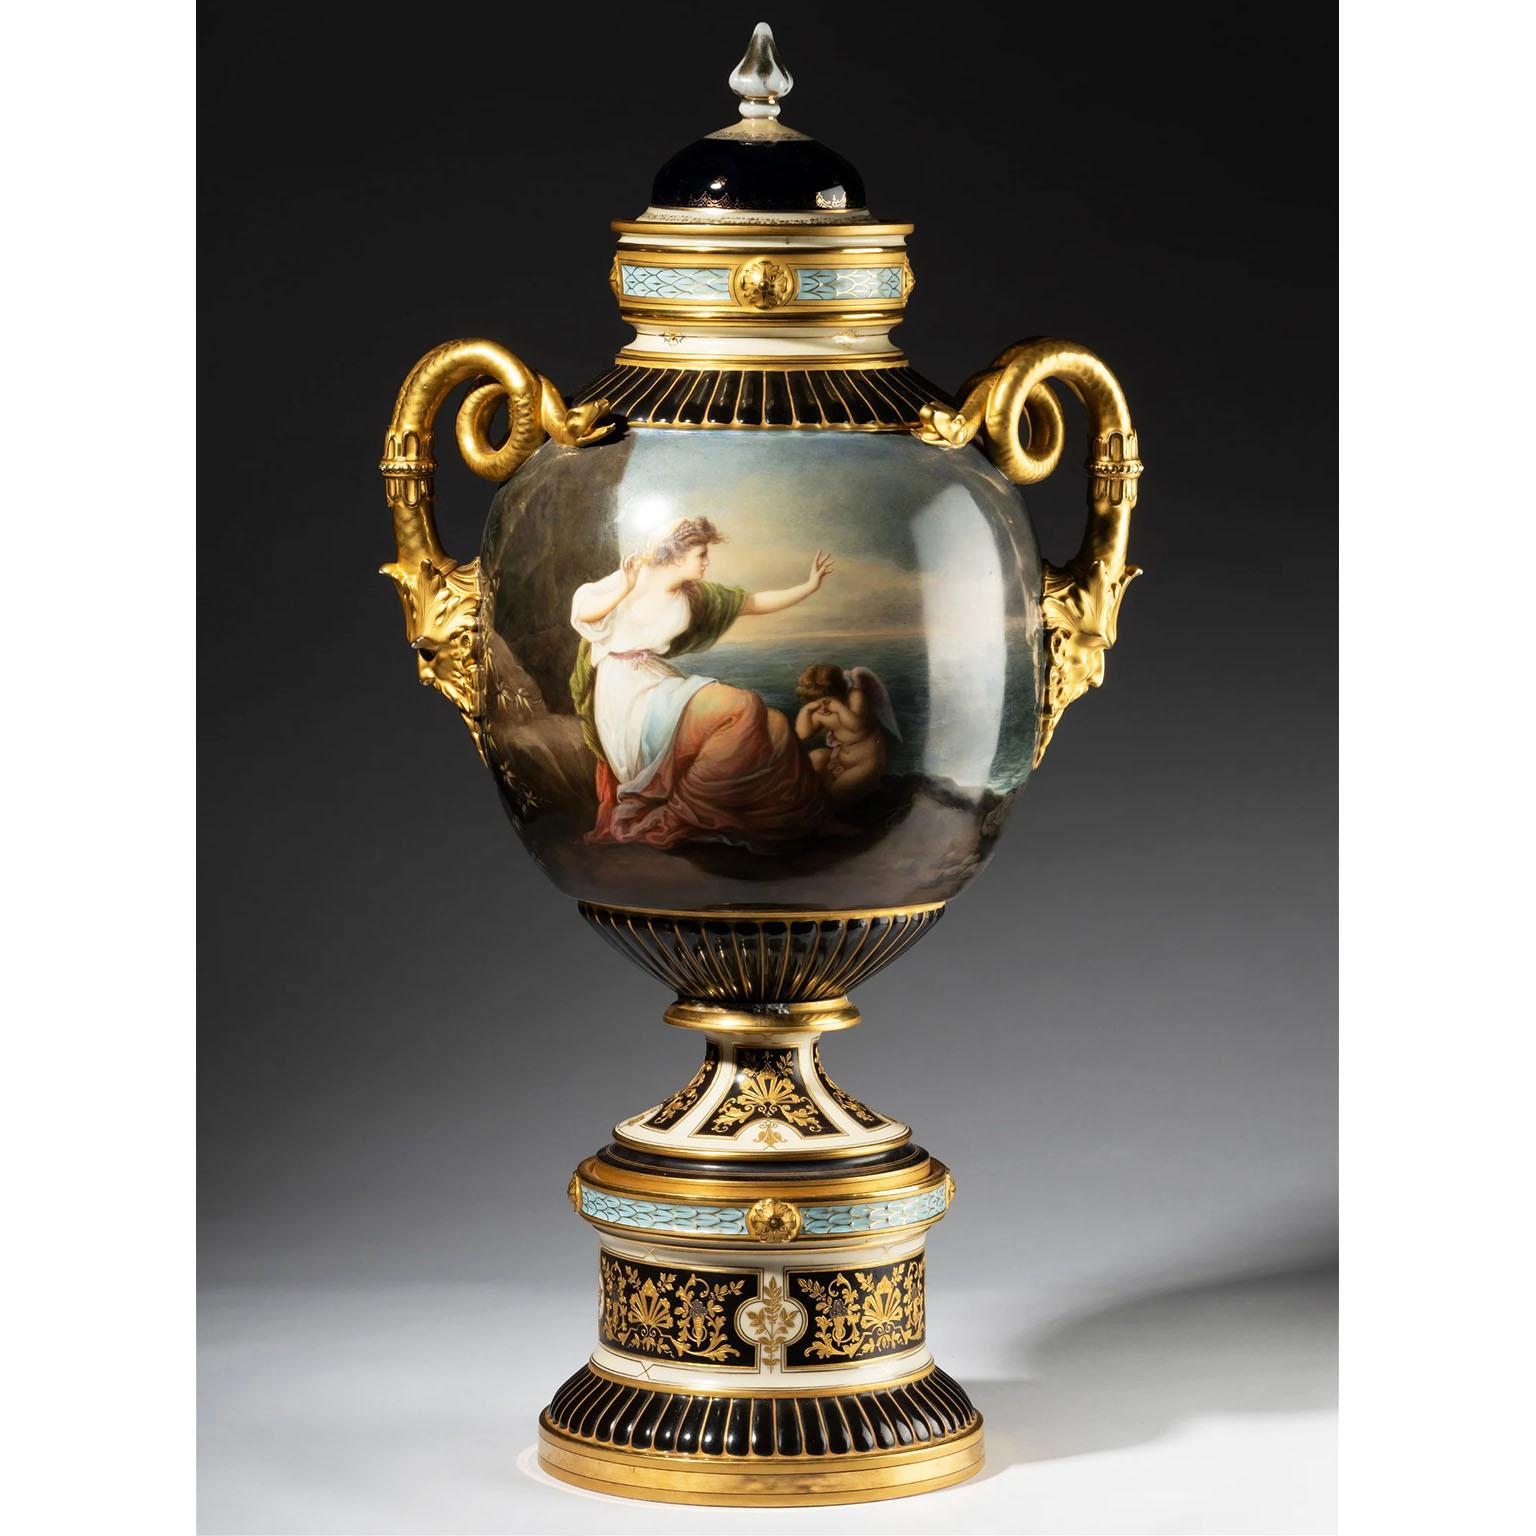 Très beau et impressionnant vase en porcelaine de Pirkenhammer de style viennois néoclassique du XIXe siècle - Urne. Le corps de forme ovoïde finement peint tout autour de scènes allégoriques représentant 